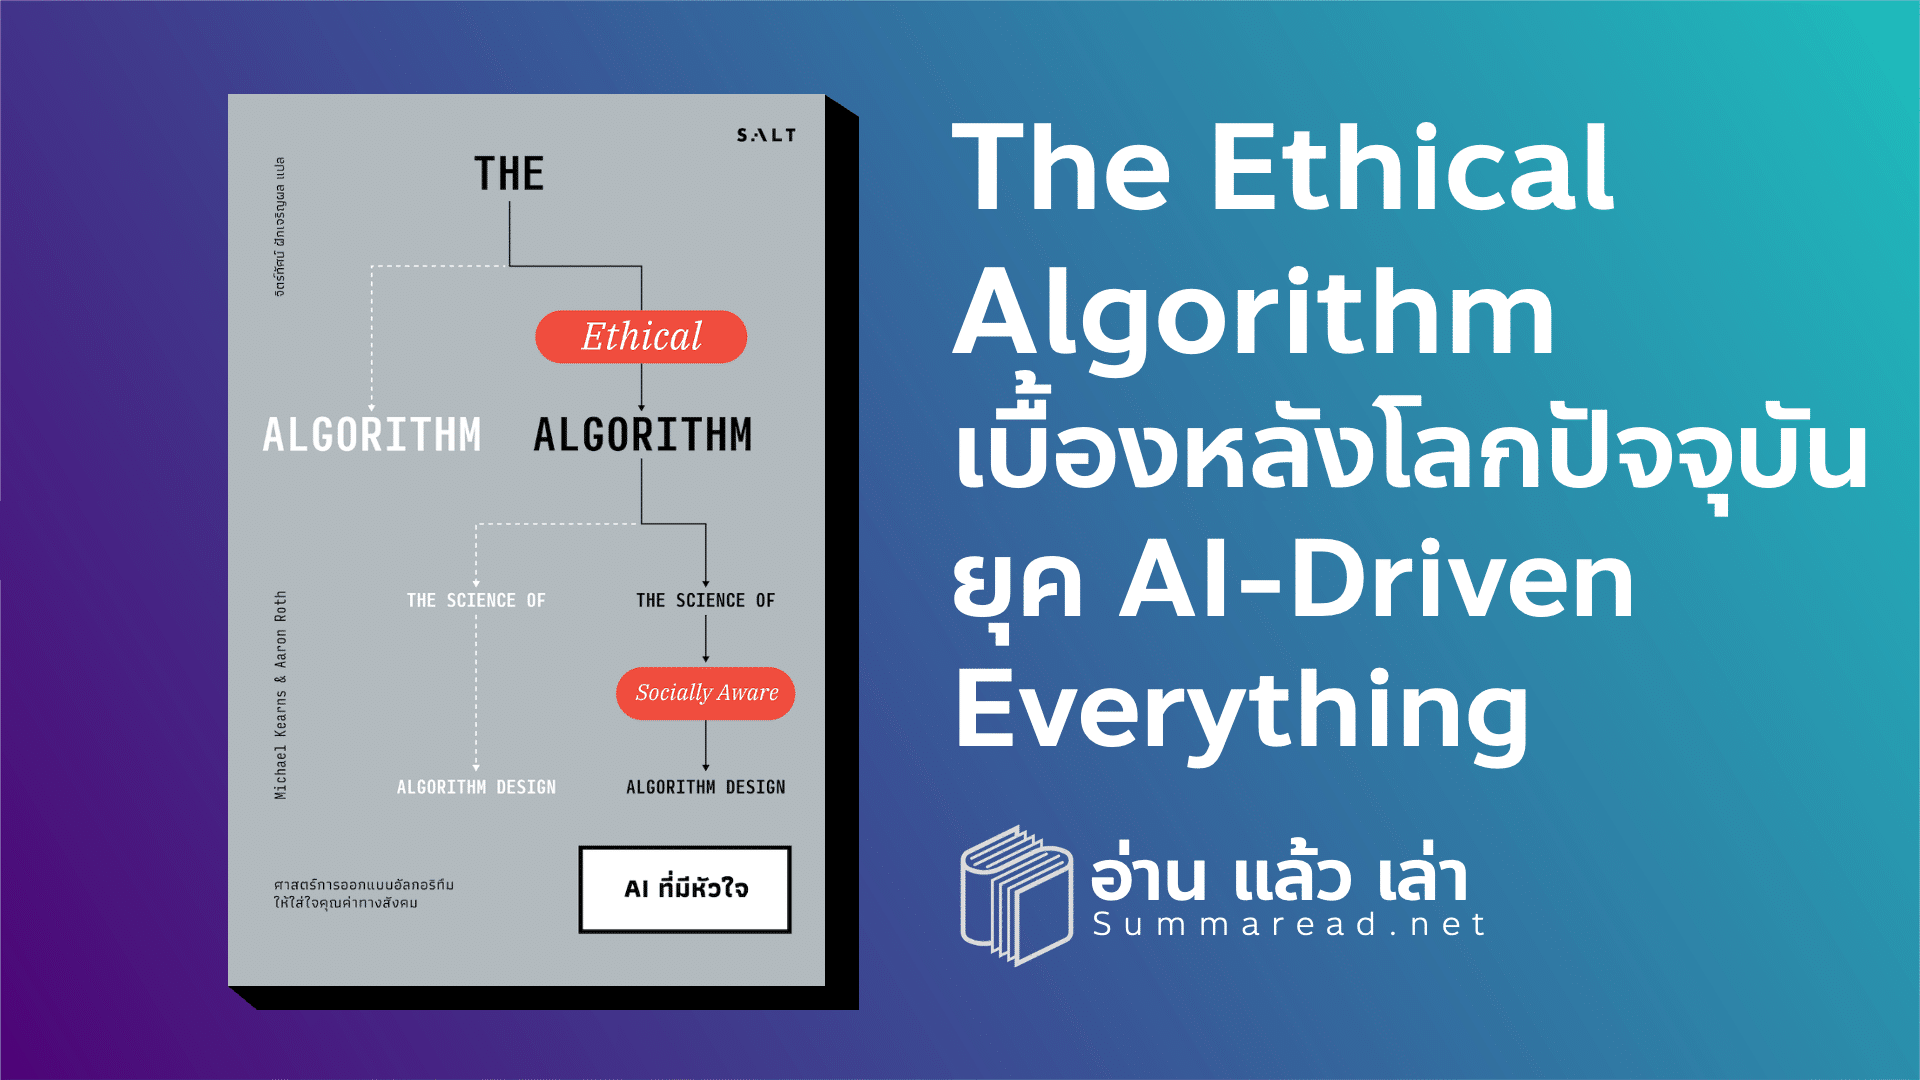 สรุปหนังสือ The Ethical Algorithm AI ที่มีหัวใจ Michael Kearns และ Aaron Roth เขียน จิตร์ทัศน์ ฝักเจริญผล แปล สำนักพิมพ์ SALT